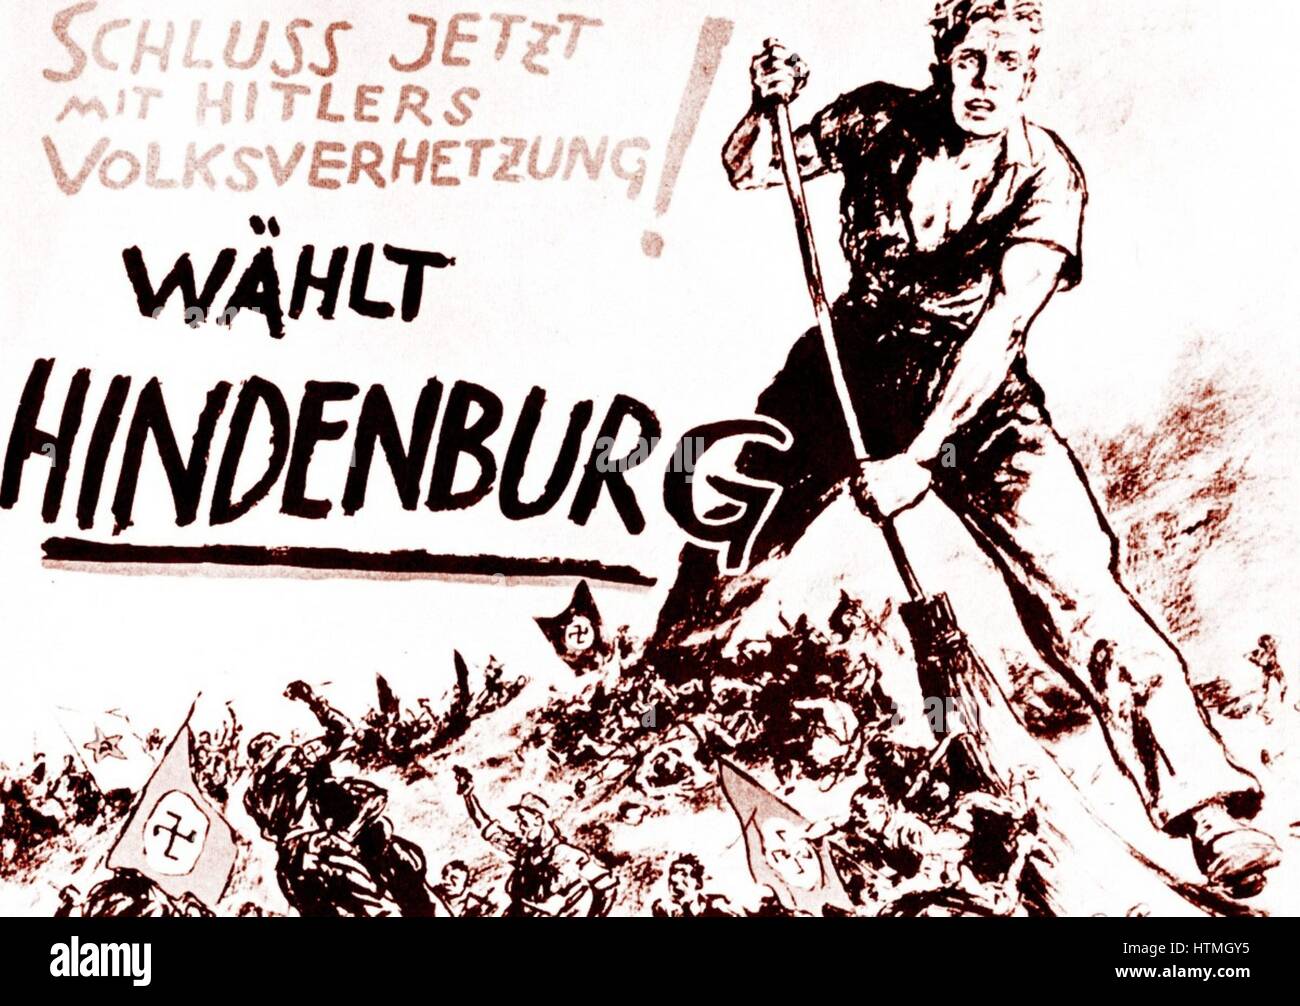 Paul von Hindenburg, chancelier allemand, en 1932 à l'âge de 84 ans s'est de nouveau candidat à l'élection comme le seul candidat qui peut vaincre Hitler, ce qu'il n'a dans un run-off en avril. "Vote élection Hindenburg' littérature l'un des partisans du Hindenburg balayant les nazis d'Hitler. Banque D'Images